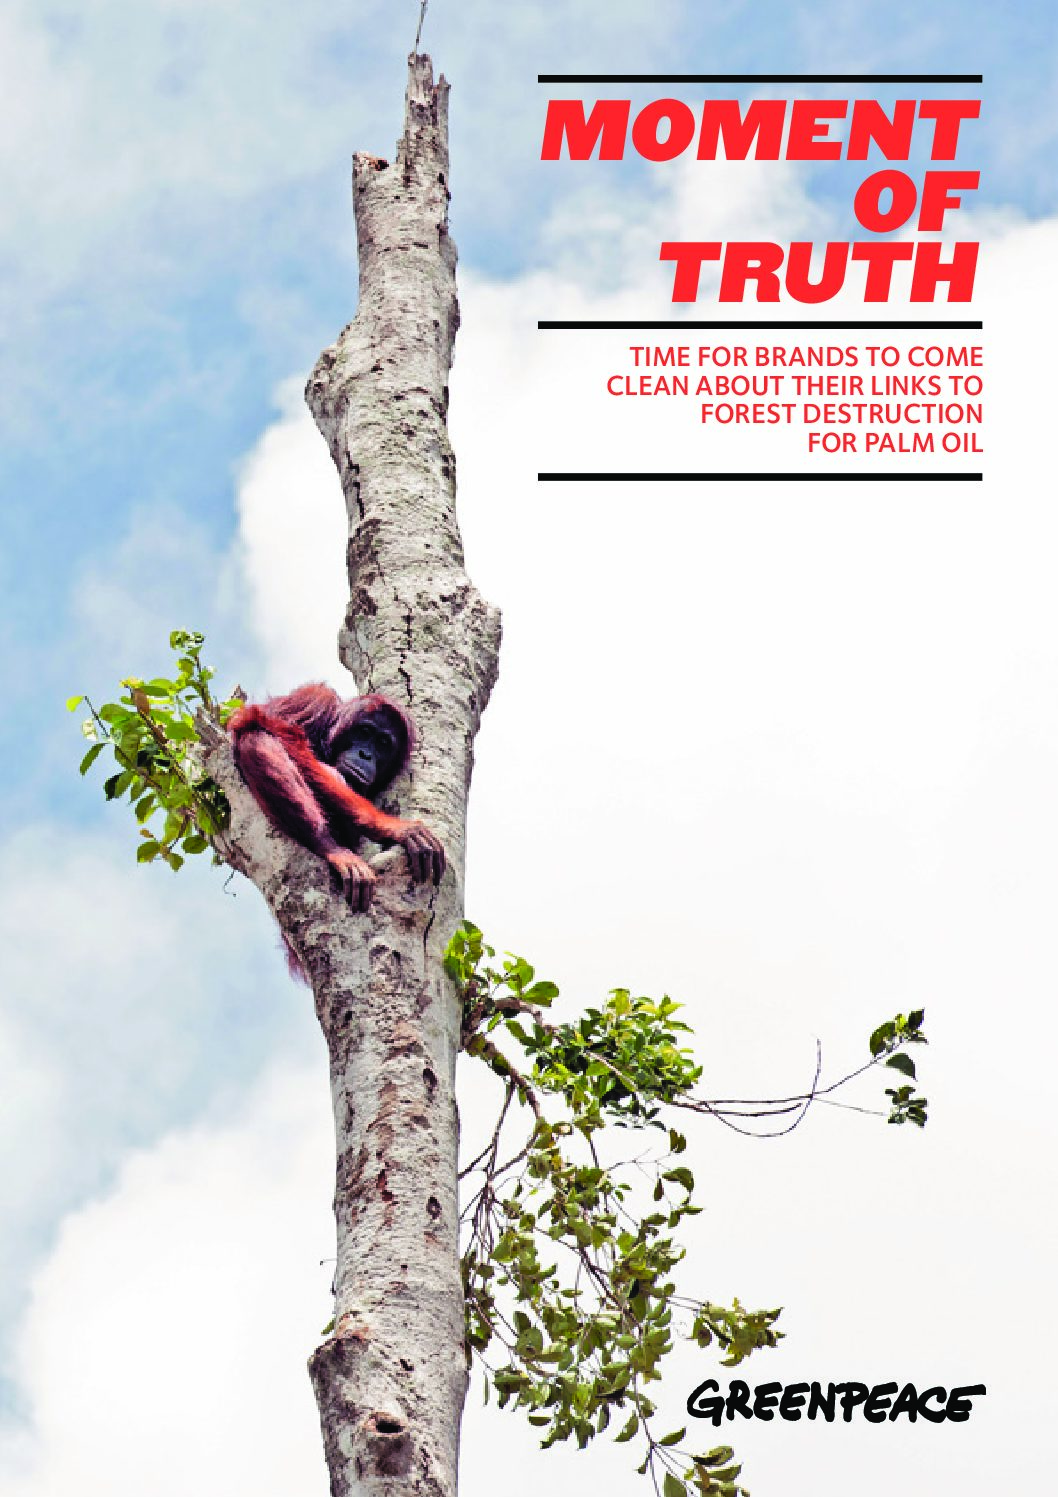 [RAPPORT] Huile de palme et déforestation — Moment de vérité (mars 2018)